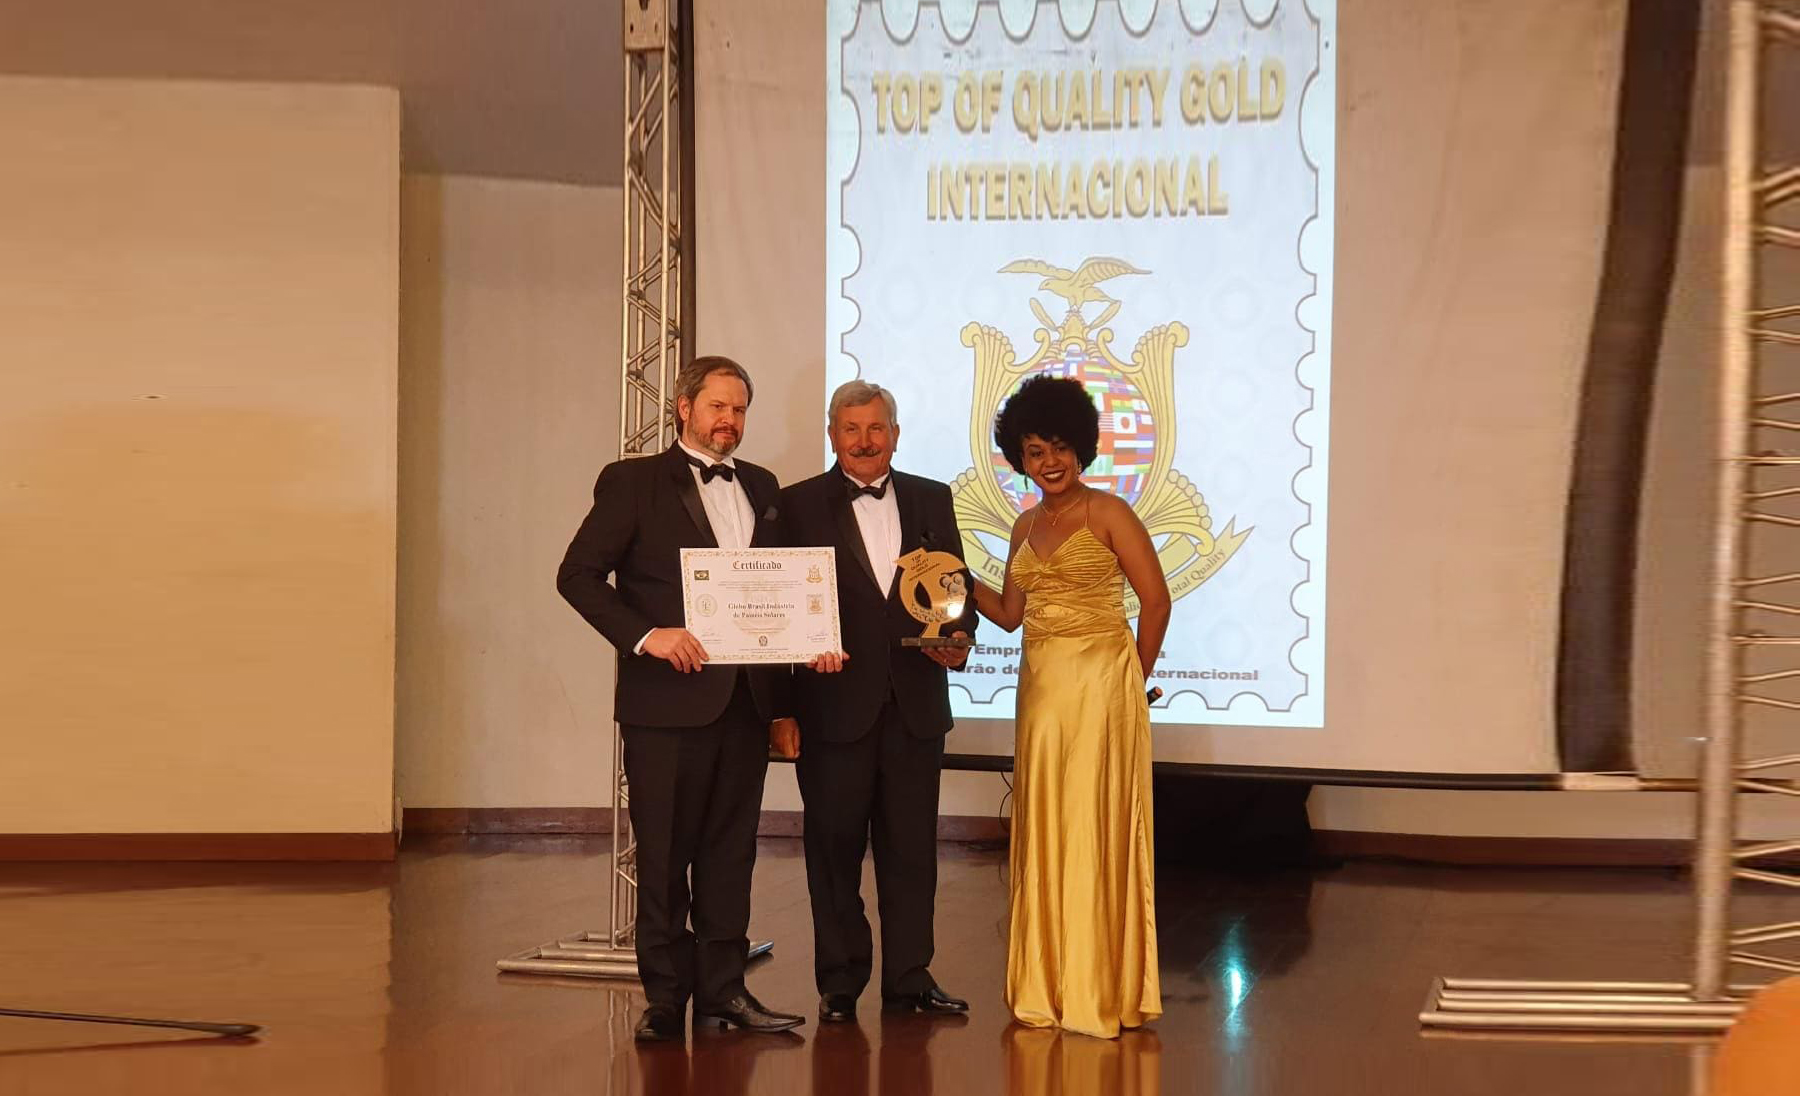 Diretor da Globo Brasil recebe o Prêmio Top Of Quality Gold Internacional 2019